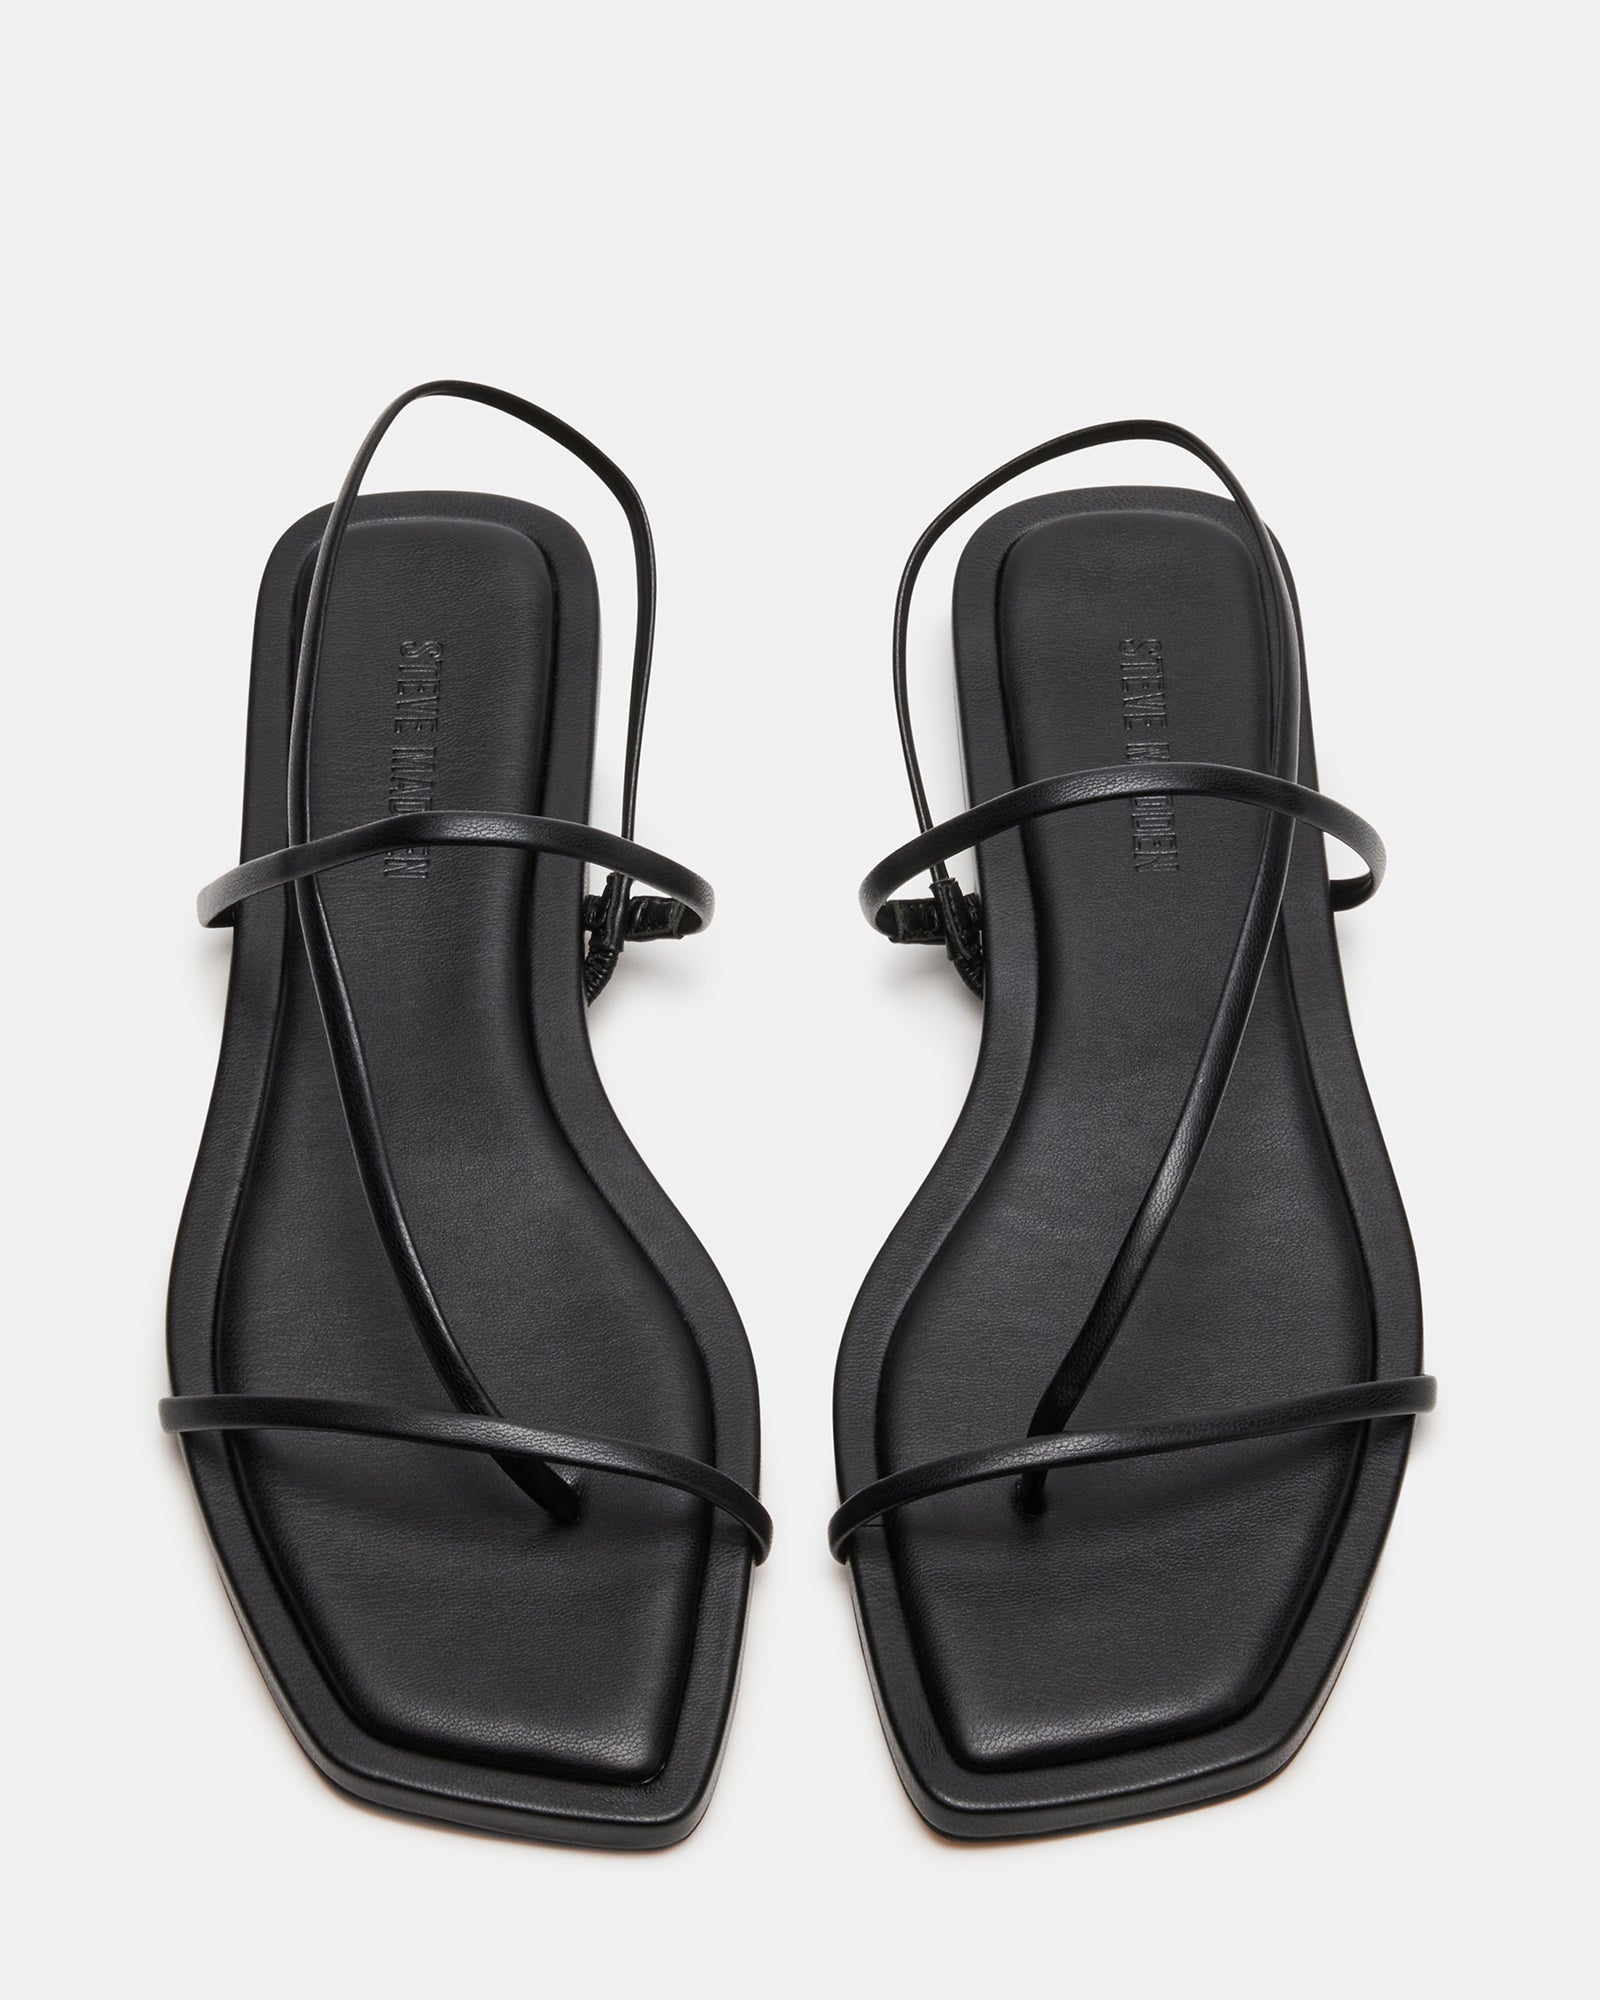 LYNLEY Black Strappy Square Toe Sandal | Women's Sandals – Steve Madden